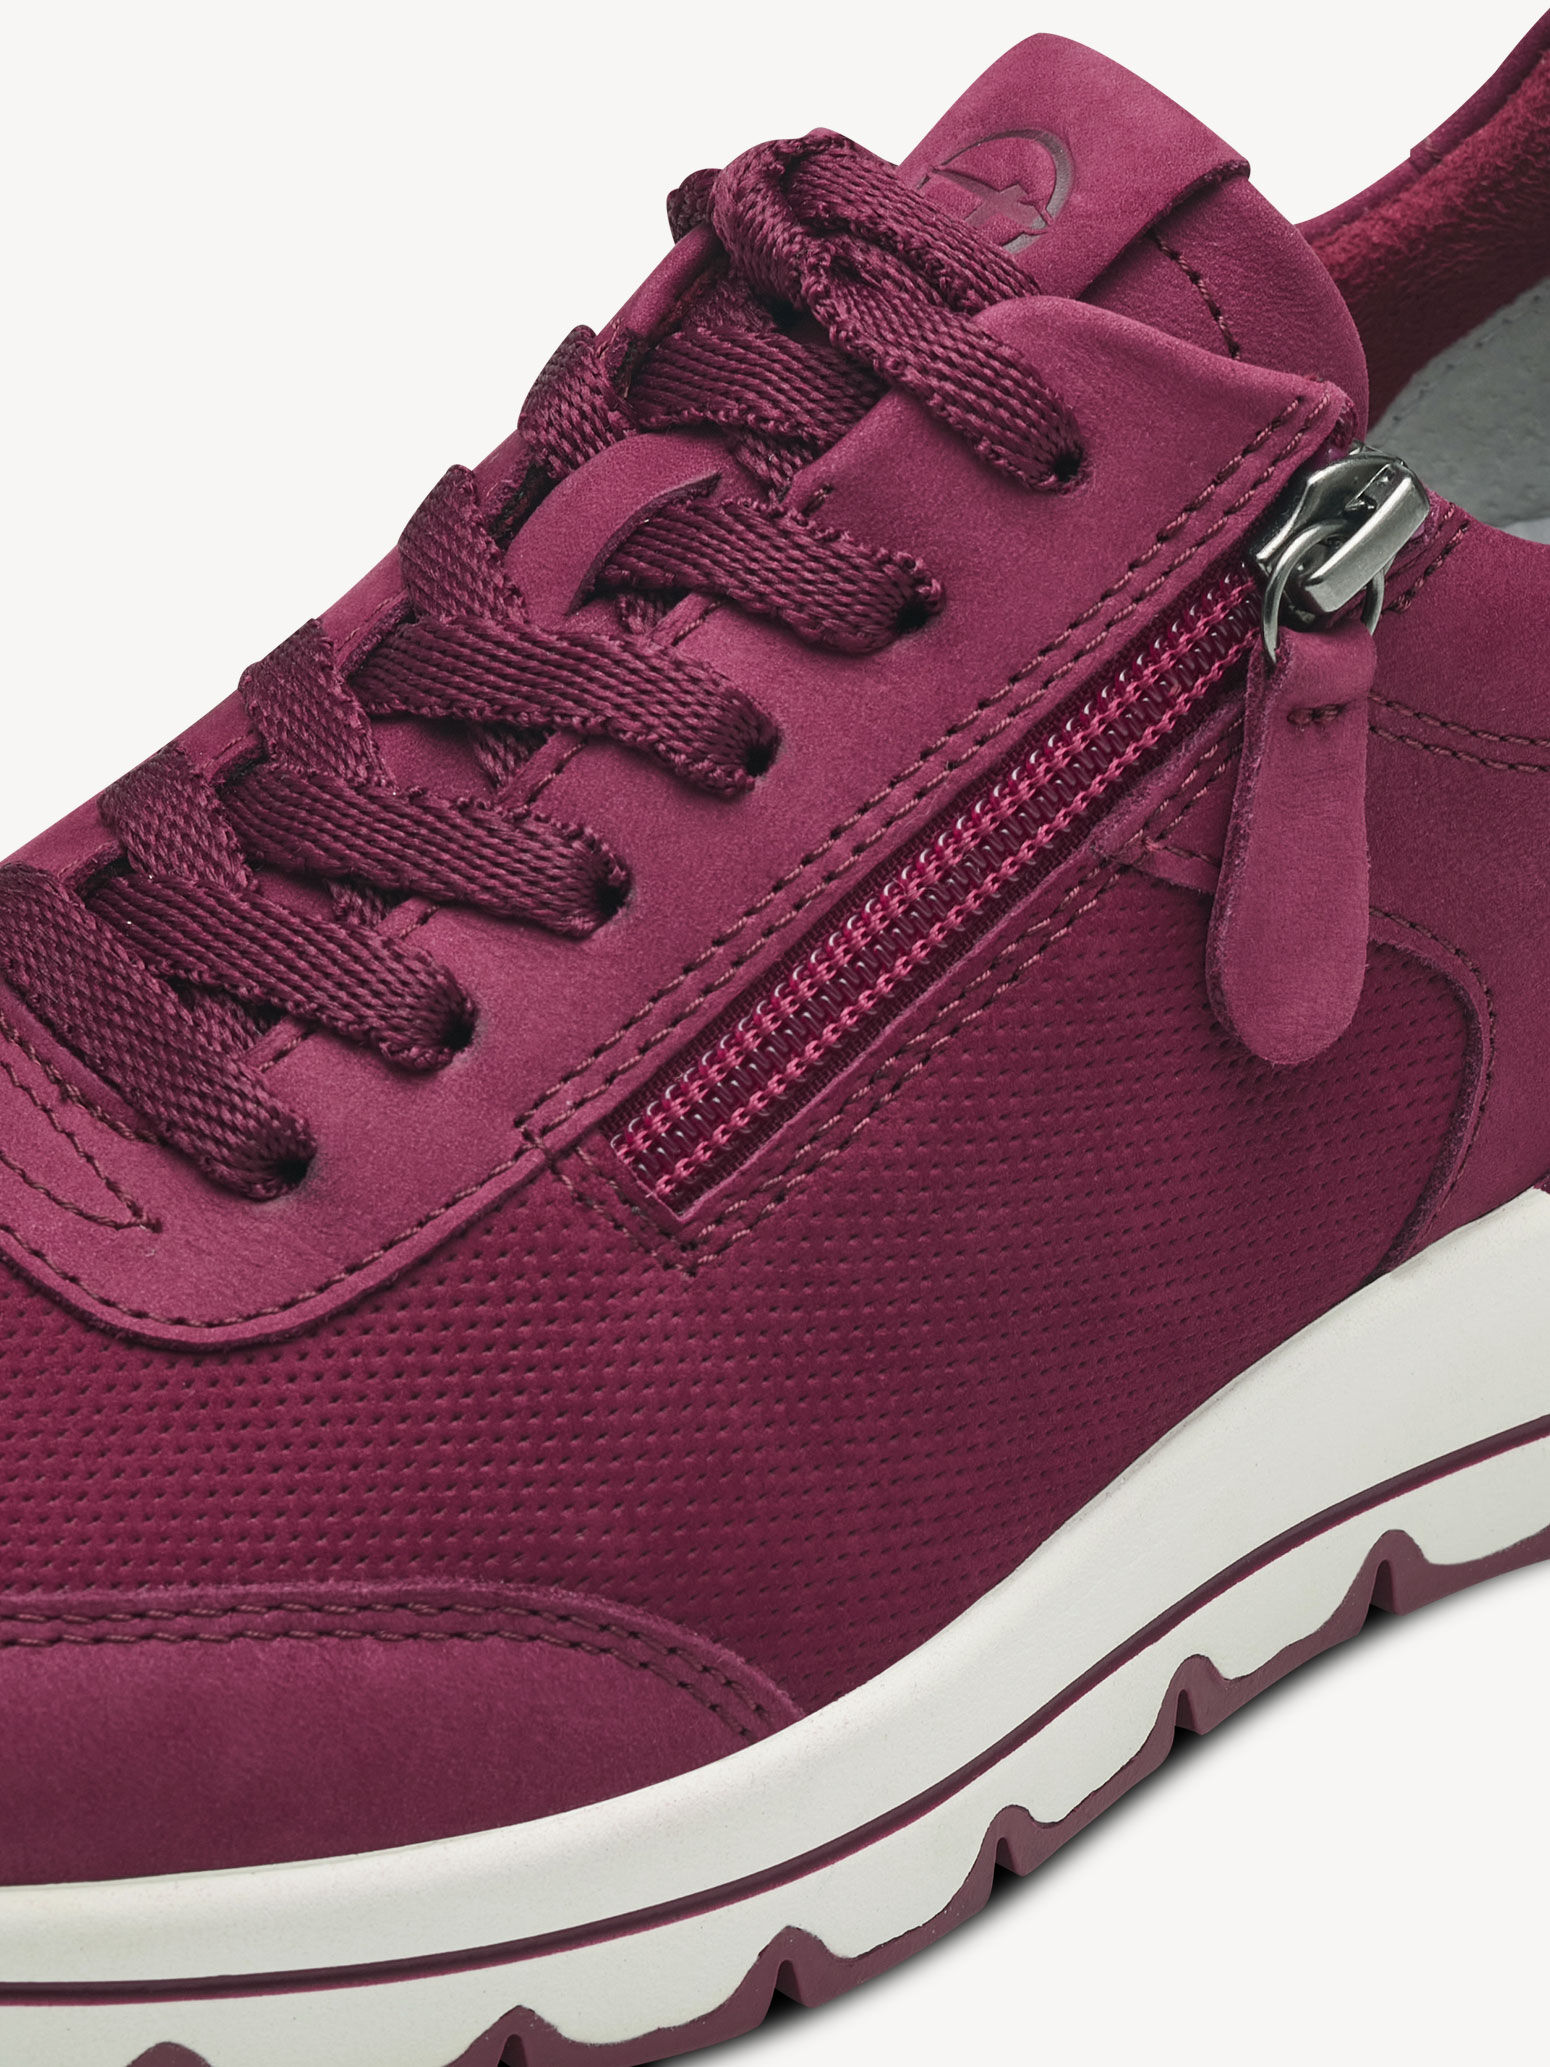 Decode Inde indvirkning Leather Sneaker - red 1-23725-41-549: Buy Tamaris Sneakers online!